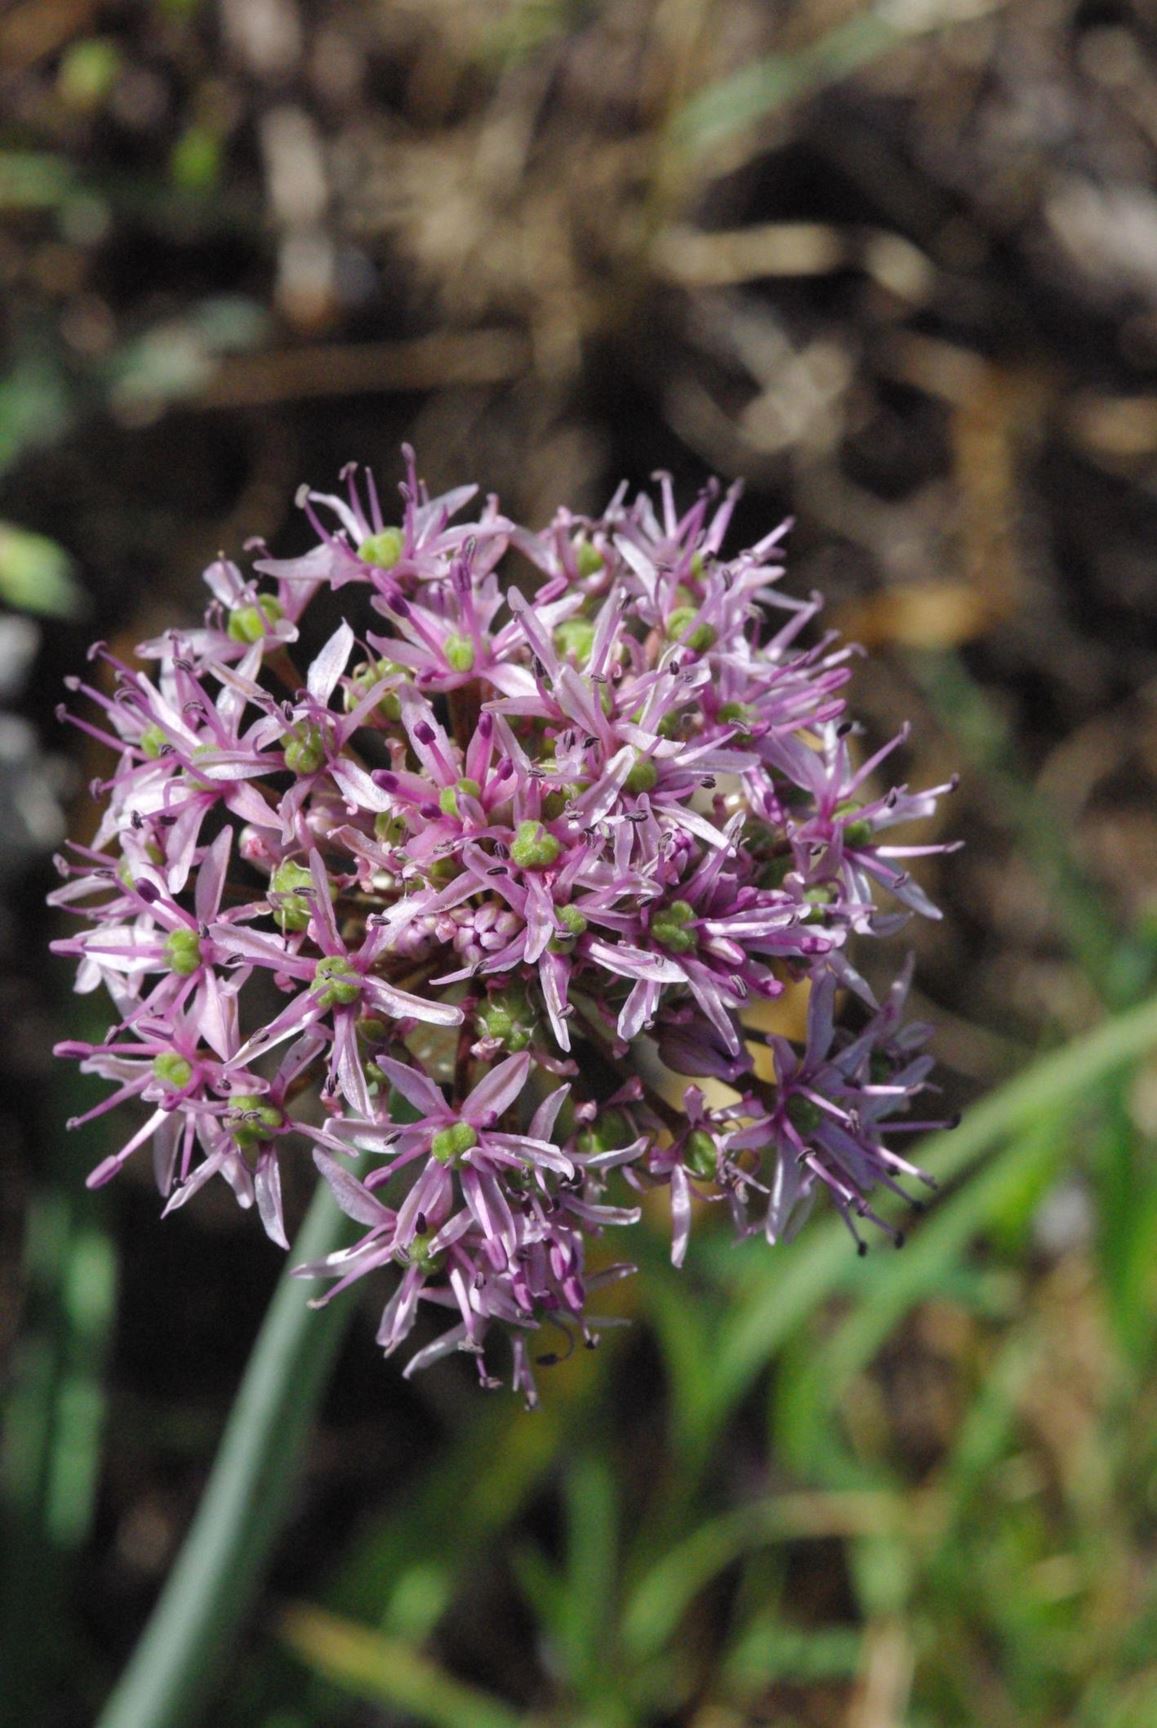 Allium tel-avivense - Tel-Aviv Garlic, שום תל-אביבי, שום  תל-אביבי